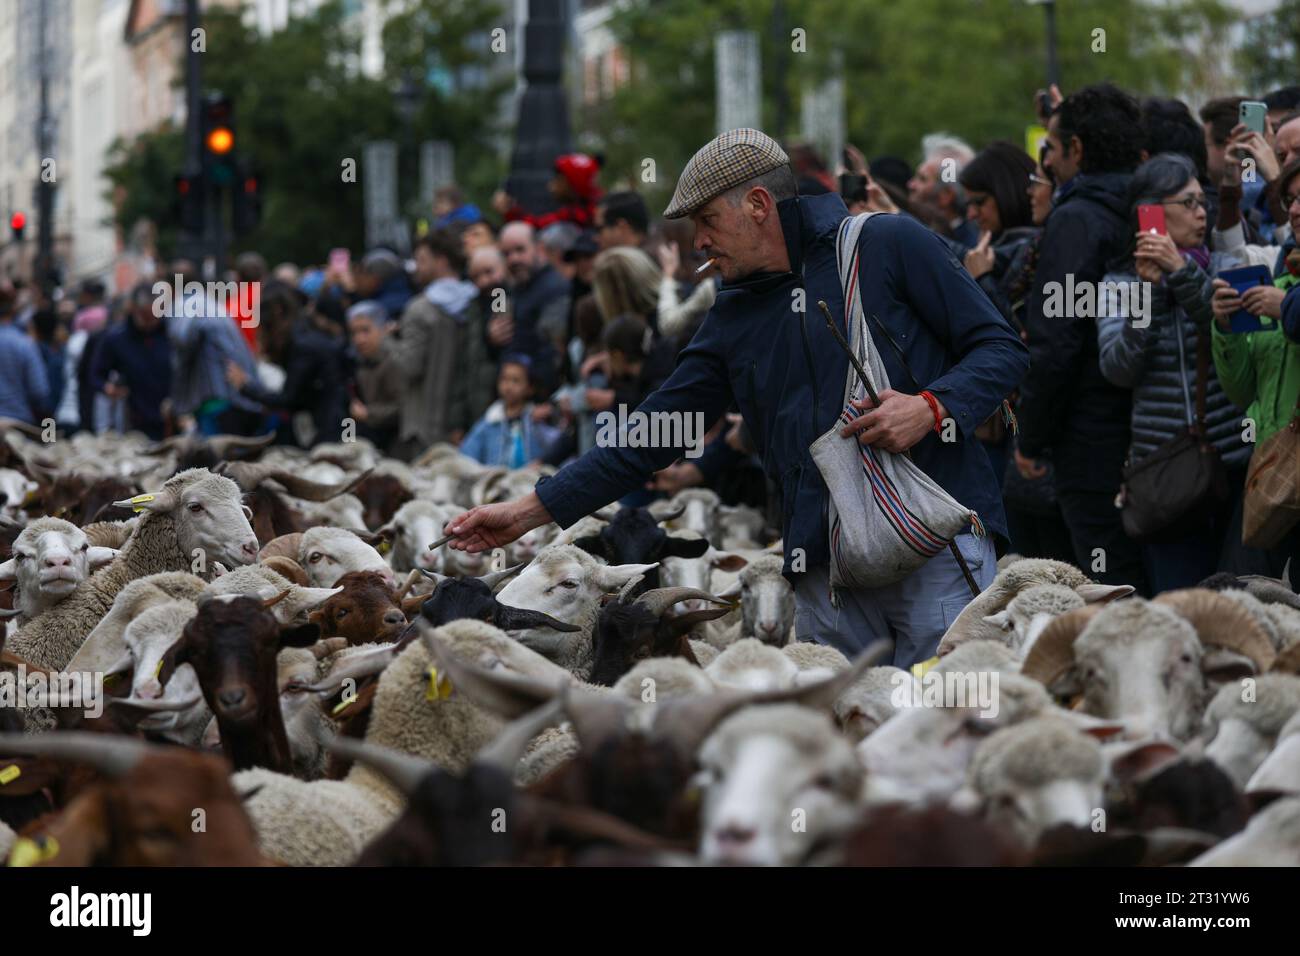 Ein Hirte spricht einige Schafe während des Wanderfestes im Zentrum von Madrid an. Ein weiteres Jahr überquerten die Schafe das Zentrum von Madrid in einer neuen Ausgabe des Transhumance Festivals. Das Festival wird seit 1994 gefeiert und füllt die Hauptschlagadern der spanischen Hauptstadt mit Schafen, um eine umfangreiche Tierhaltung als Instrument zur Erhaltung der biologischen Vielfalt und zur Bekämpfung des Klimawandels zu rechtfertigen. In diesem Jahr sind etwa 1.100 Schafe durch das Zentrum der Hauptstadt gezogen. (Foto: David Canales/SOPA Images/SIPA USA) Stockfoto